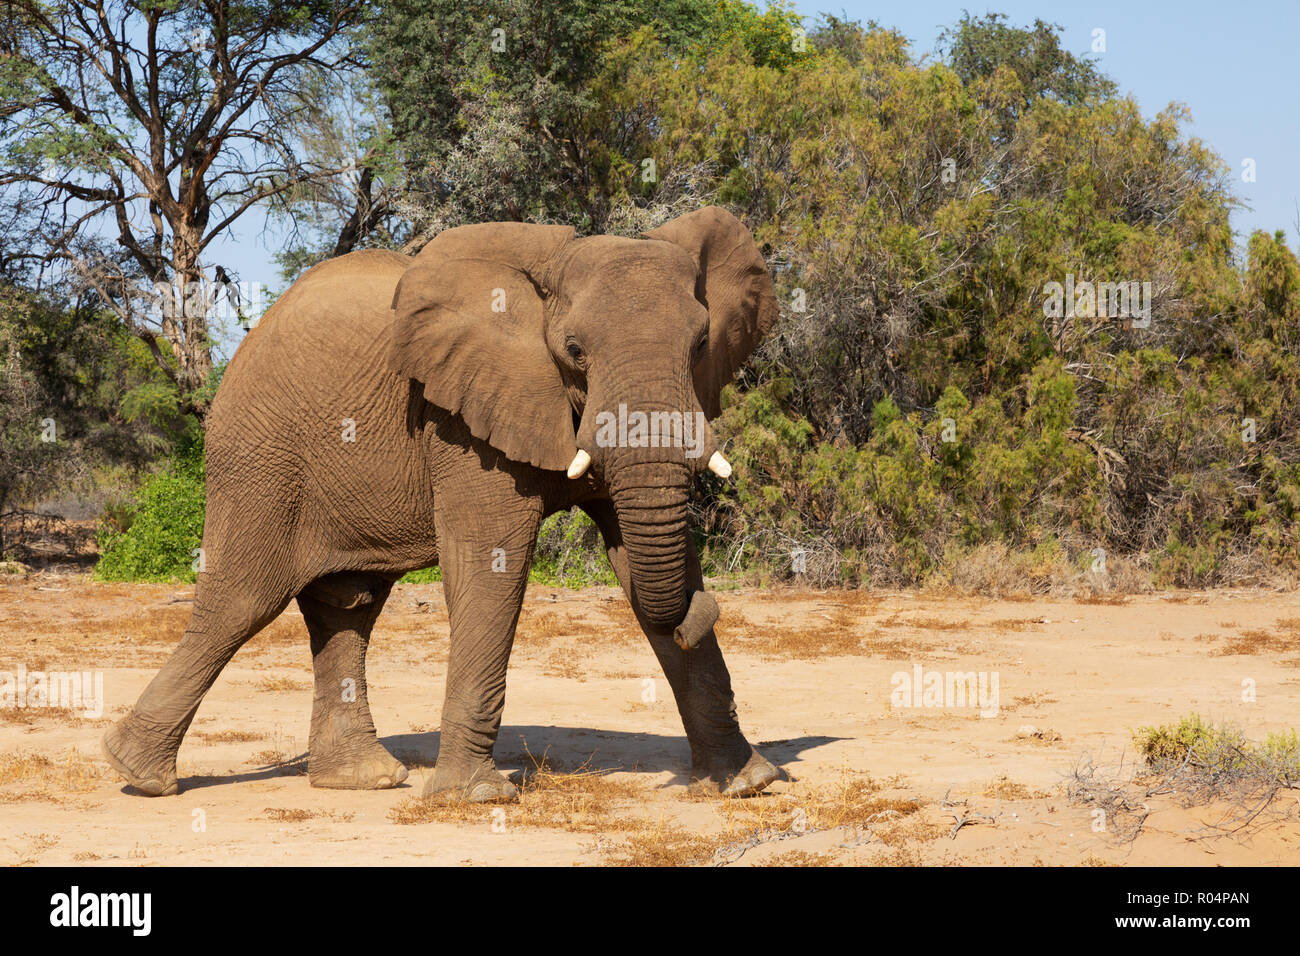 Namibia elephant - a single male desert elephant, Haub river bed, Damaraland, Namibia Africa Stock Photo